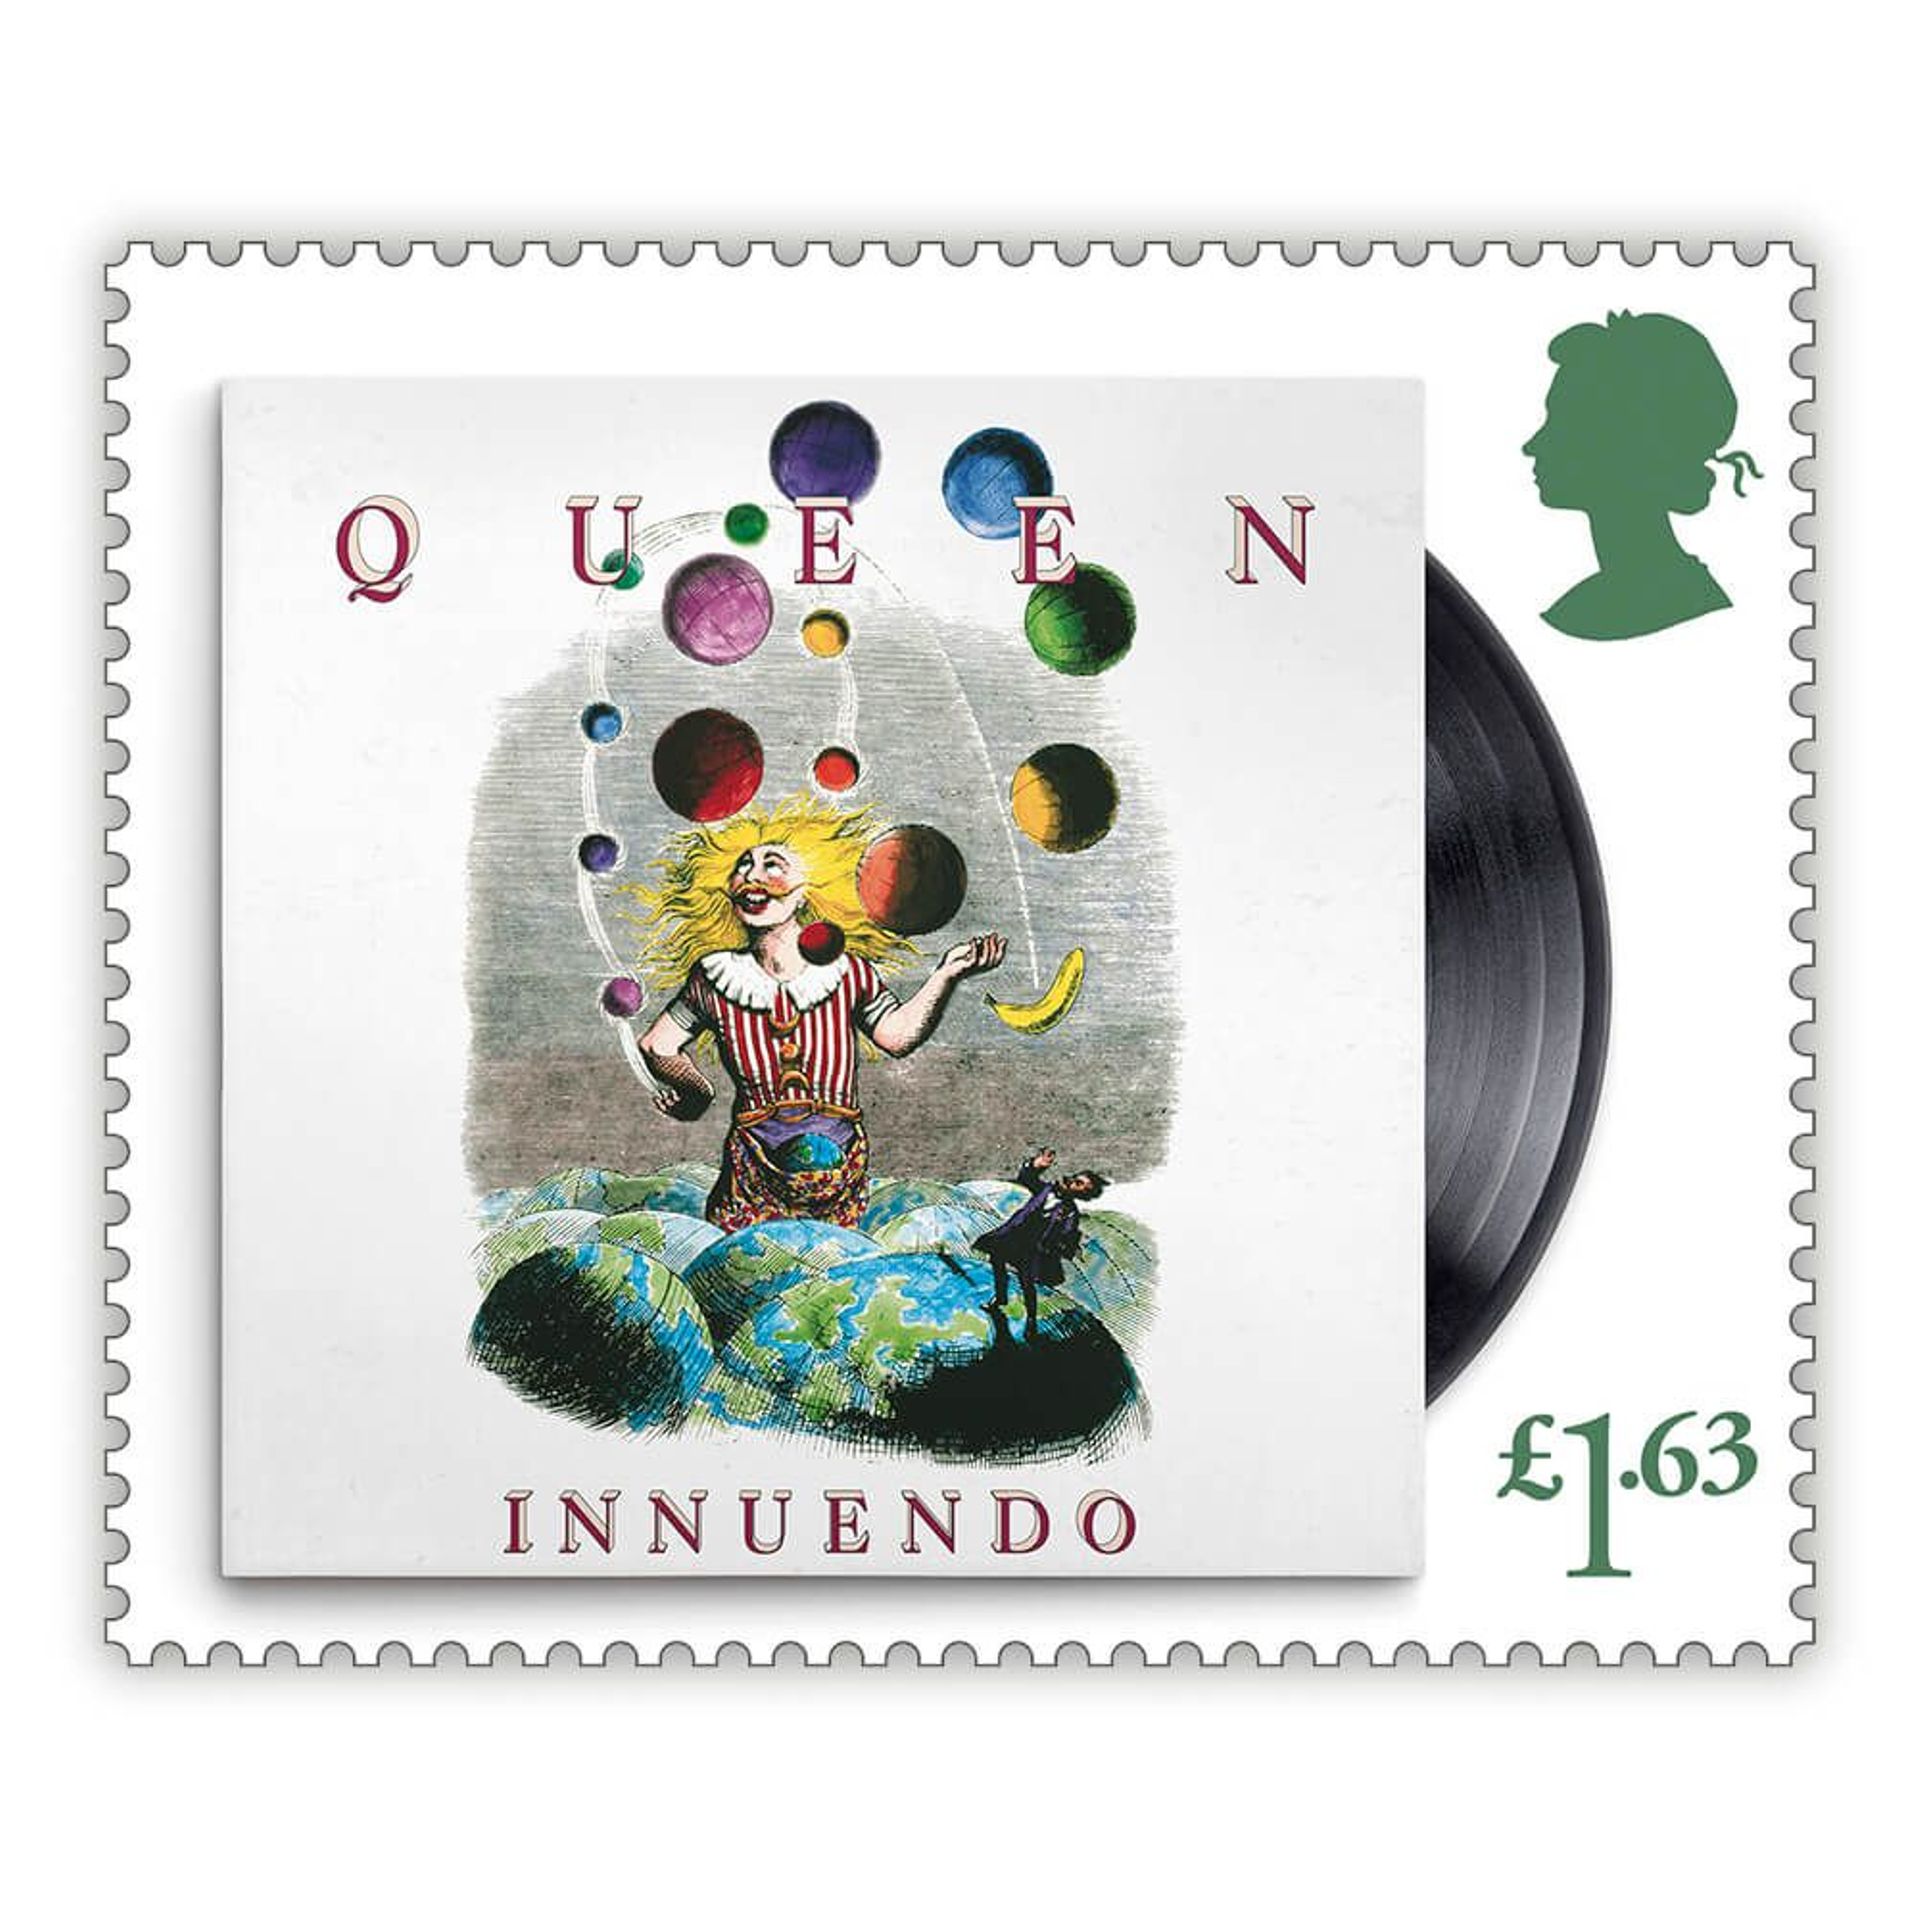 13 timbres estampillés Queen !